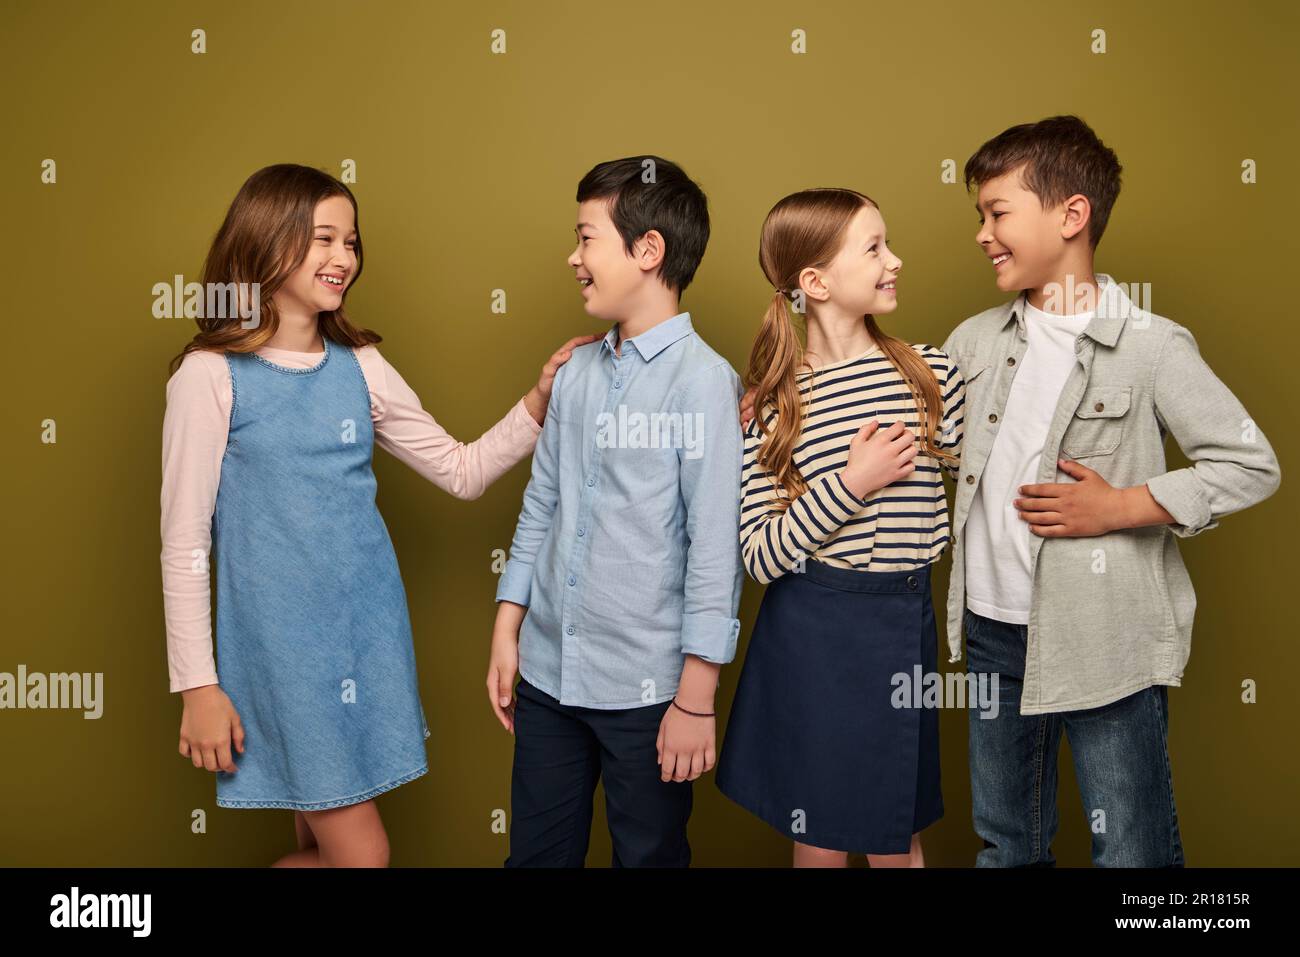 Lächelnde Kinder aus verschiedenen Rassen und Jugendliche in lässiger Kleidung, die miteinander sprechen, während sie den internationalen Tag des Kinderschutzes auf Khaki-Hintergrund feiern Stockfoto